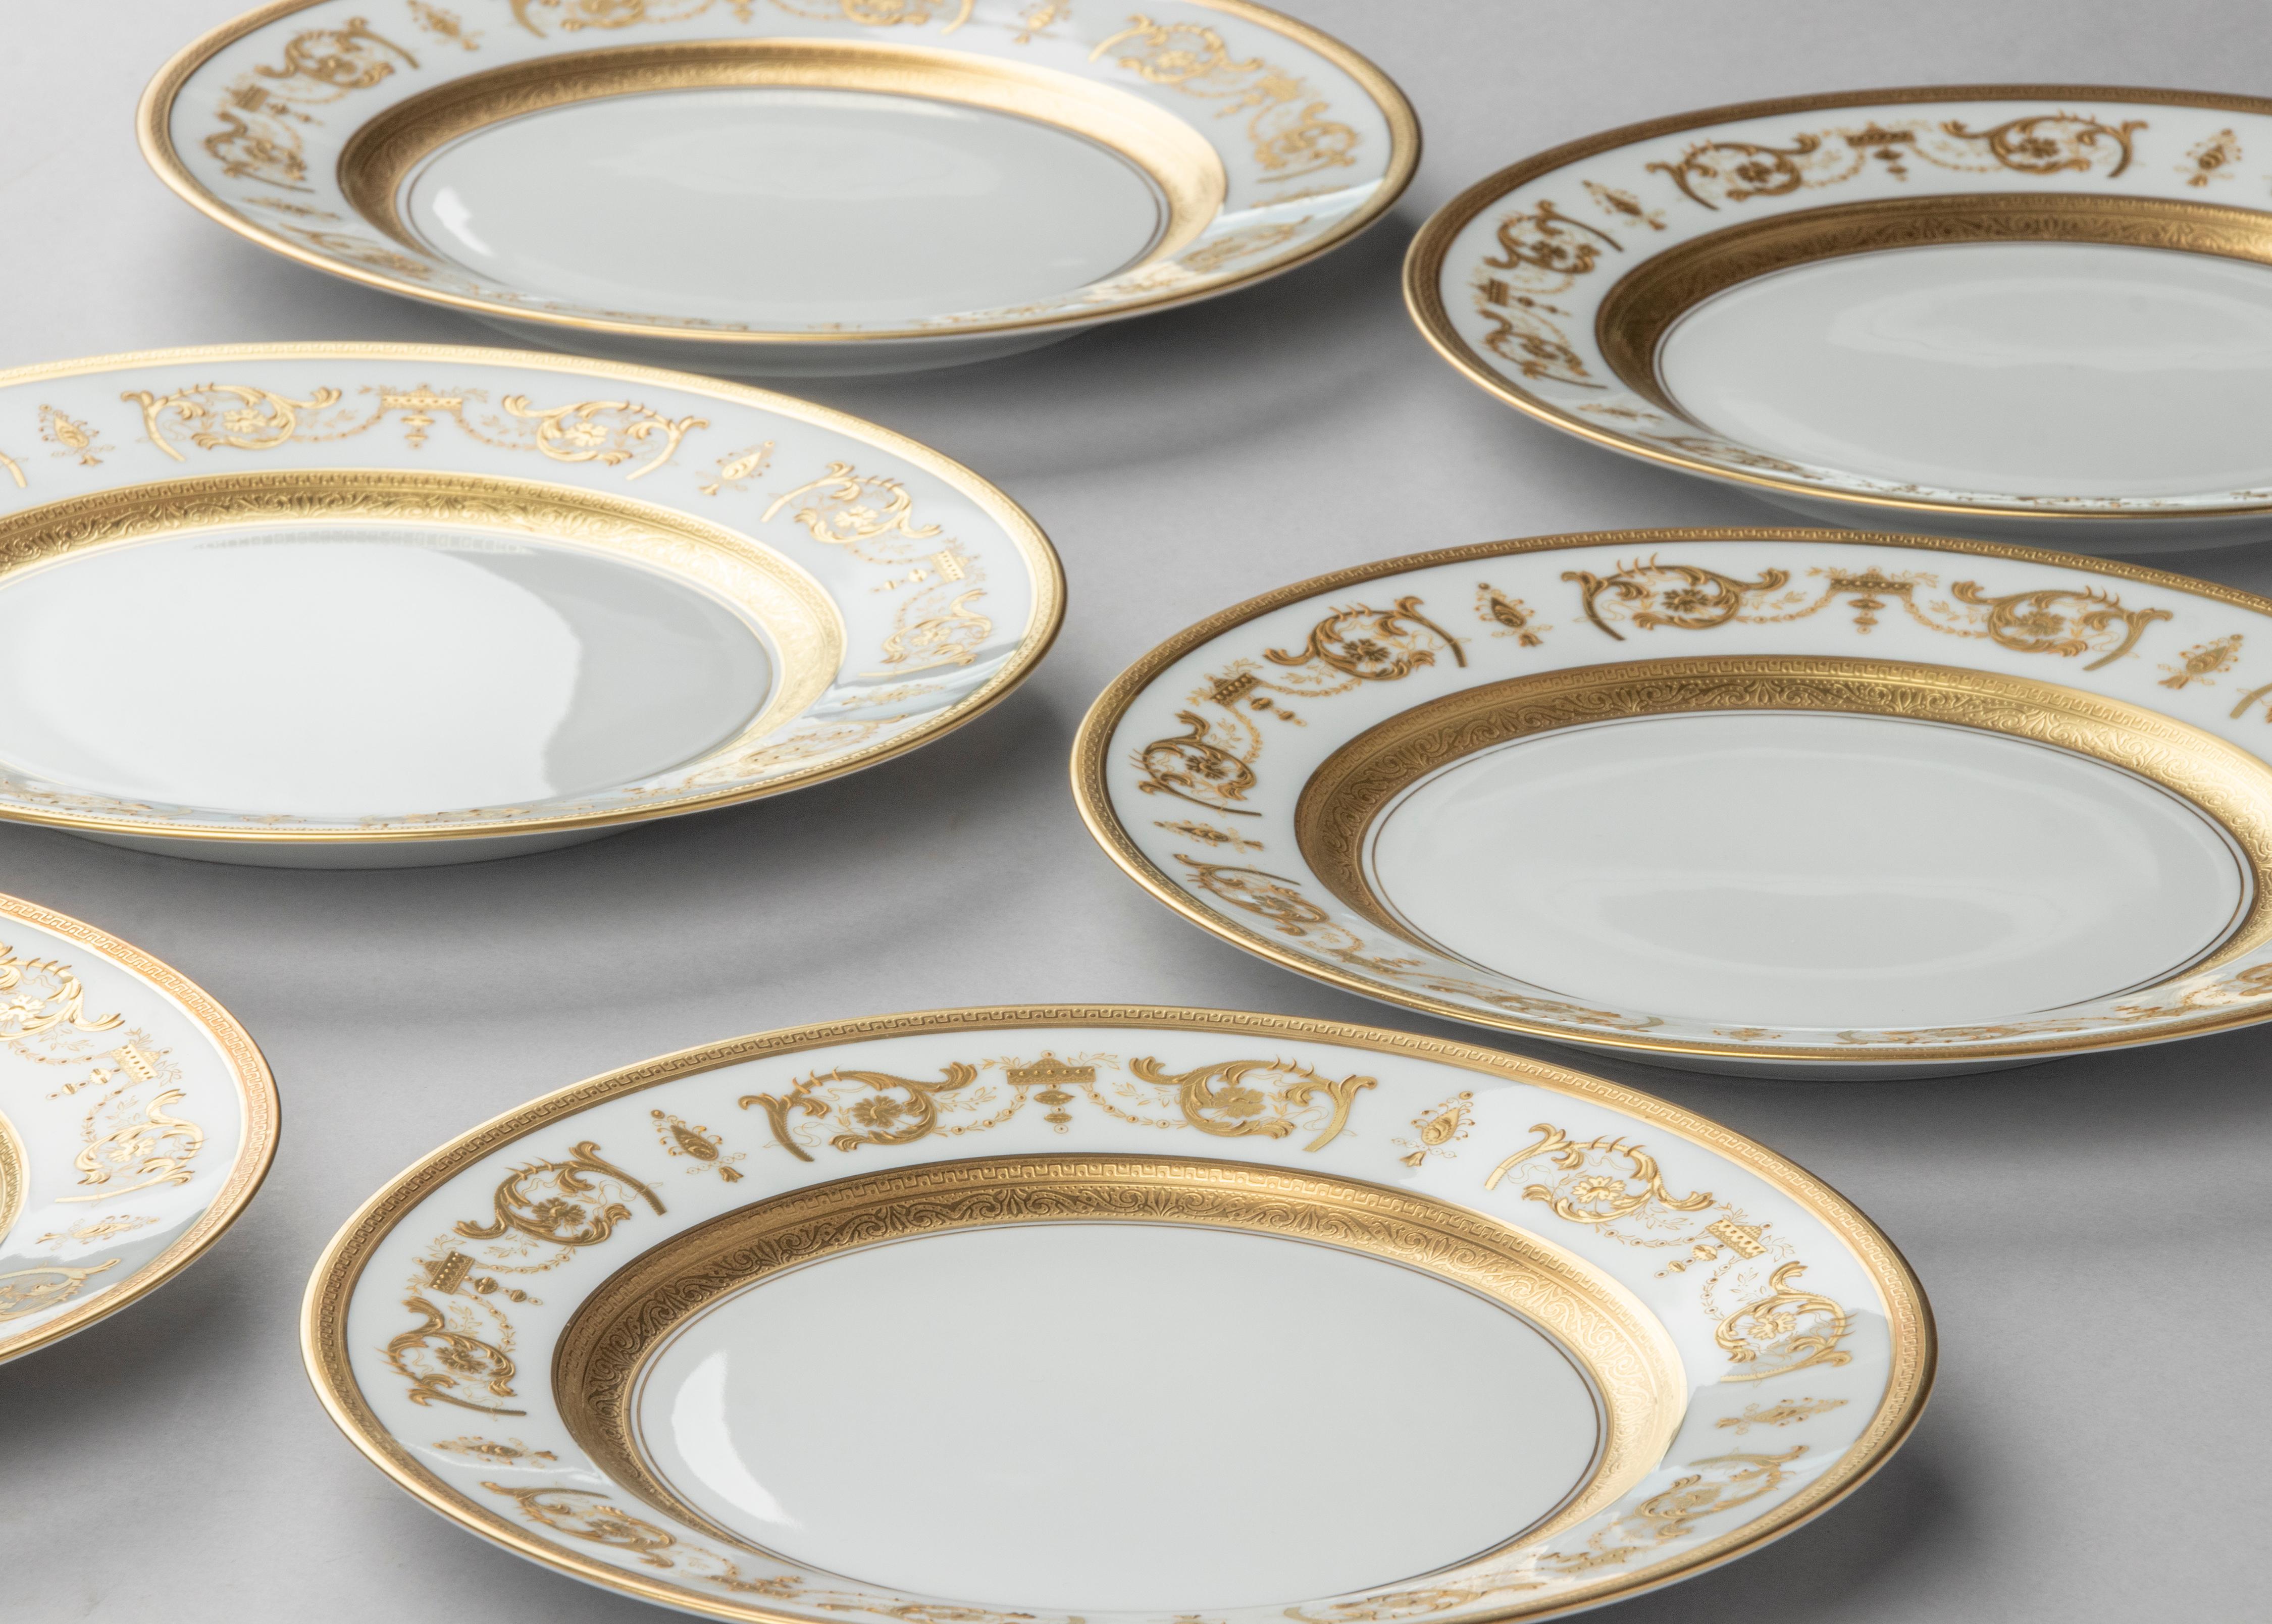 Set of 6 Porcelain Dinner Plates made by Haviland model Impérator Or 5